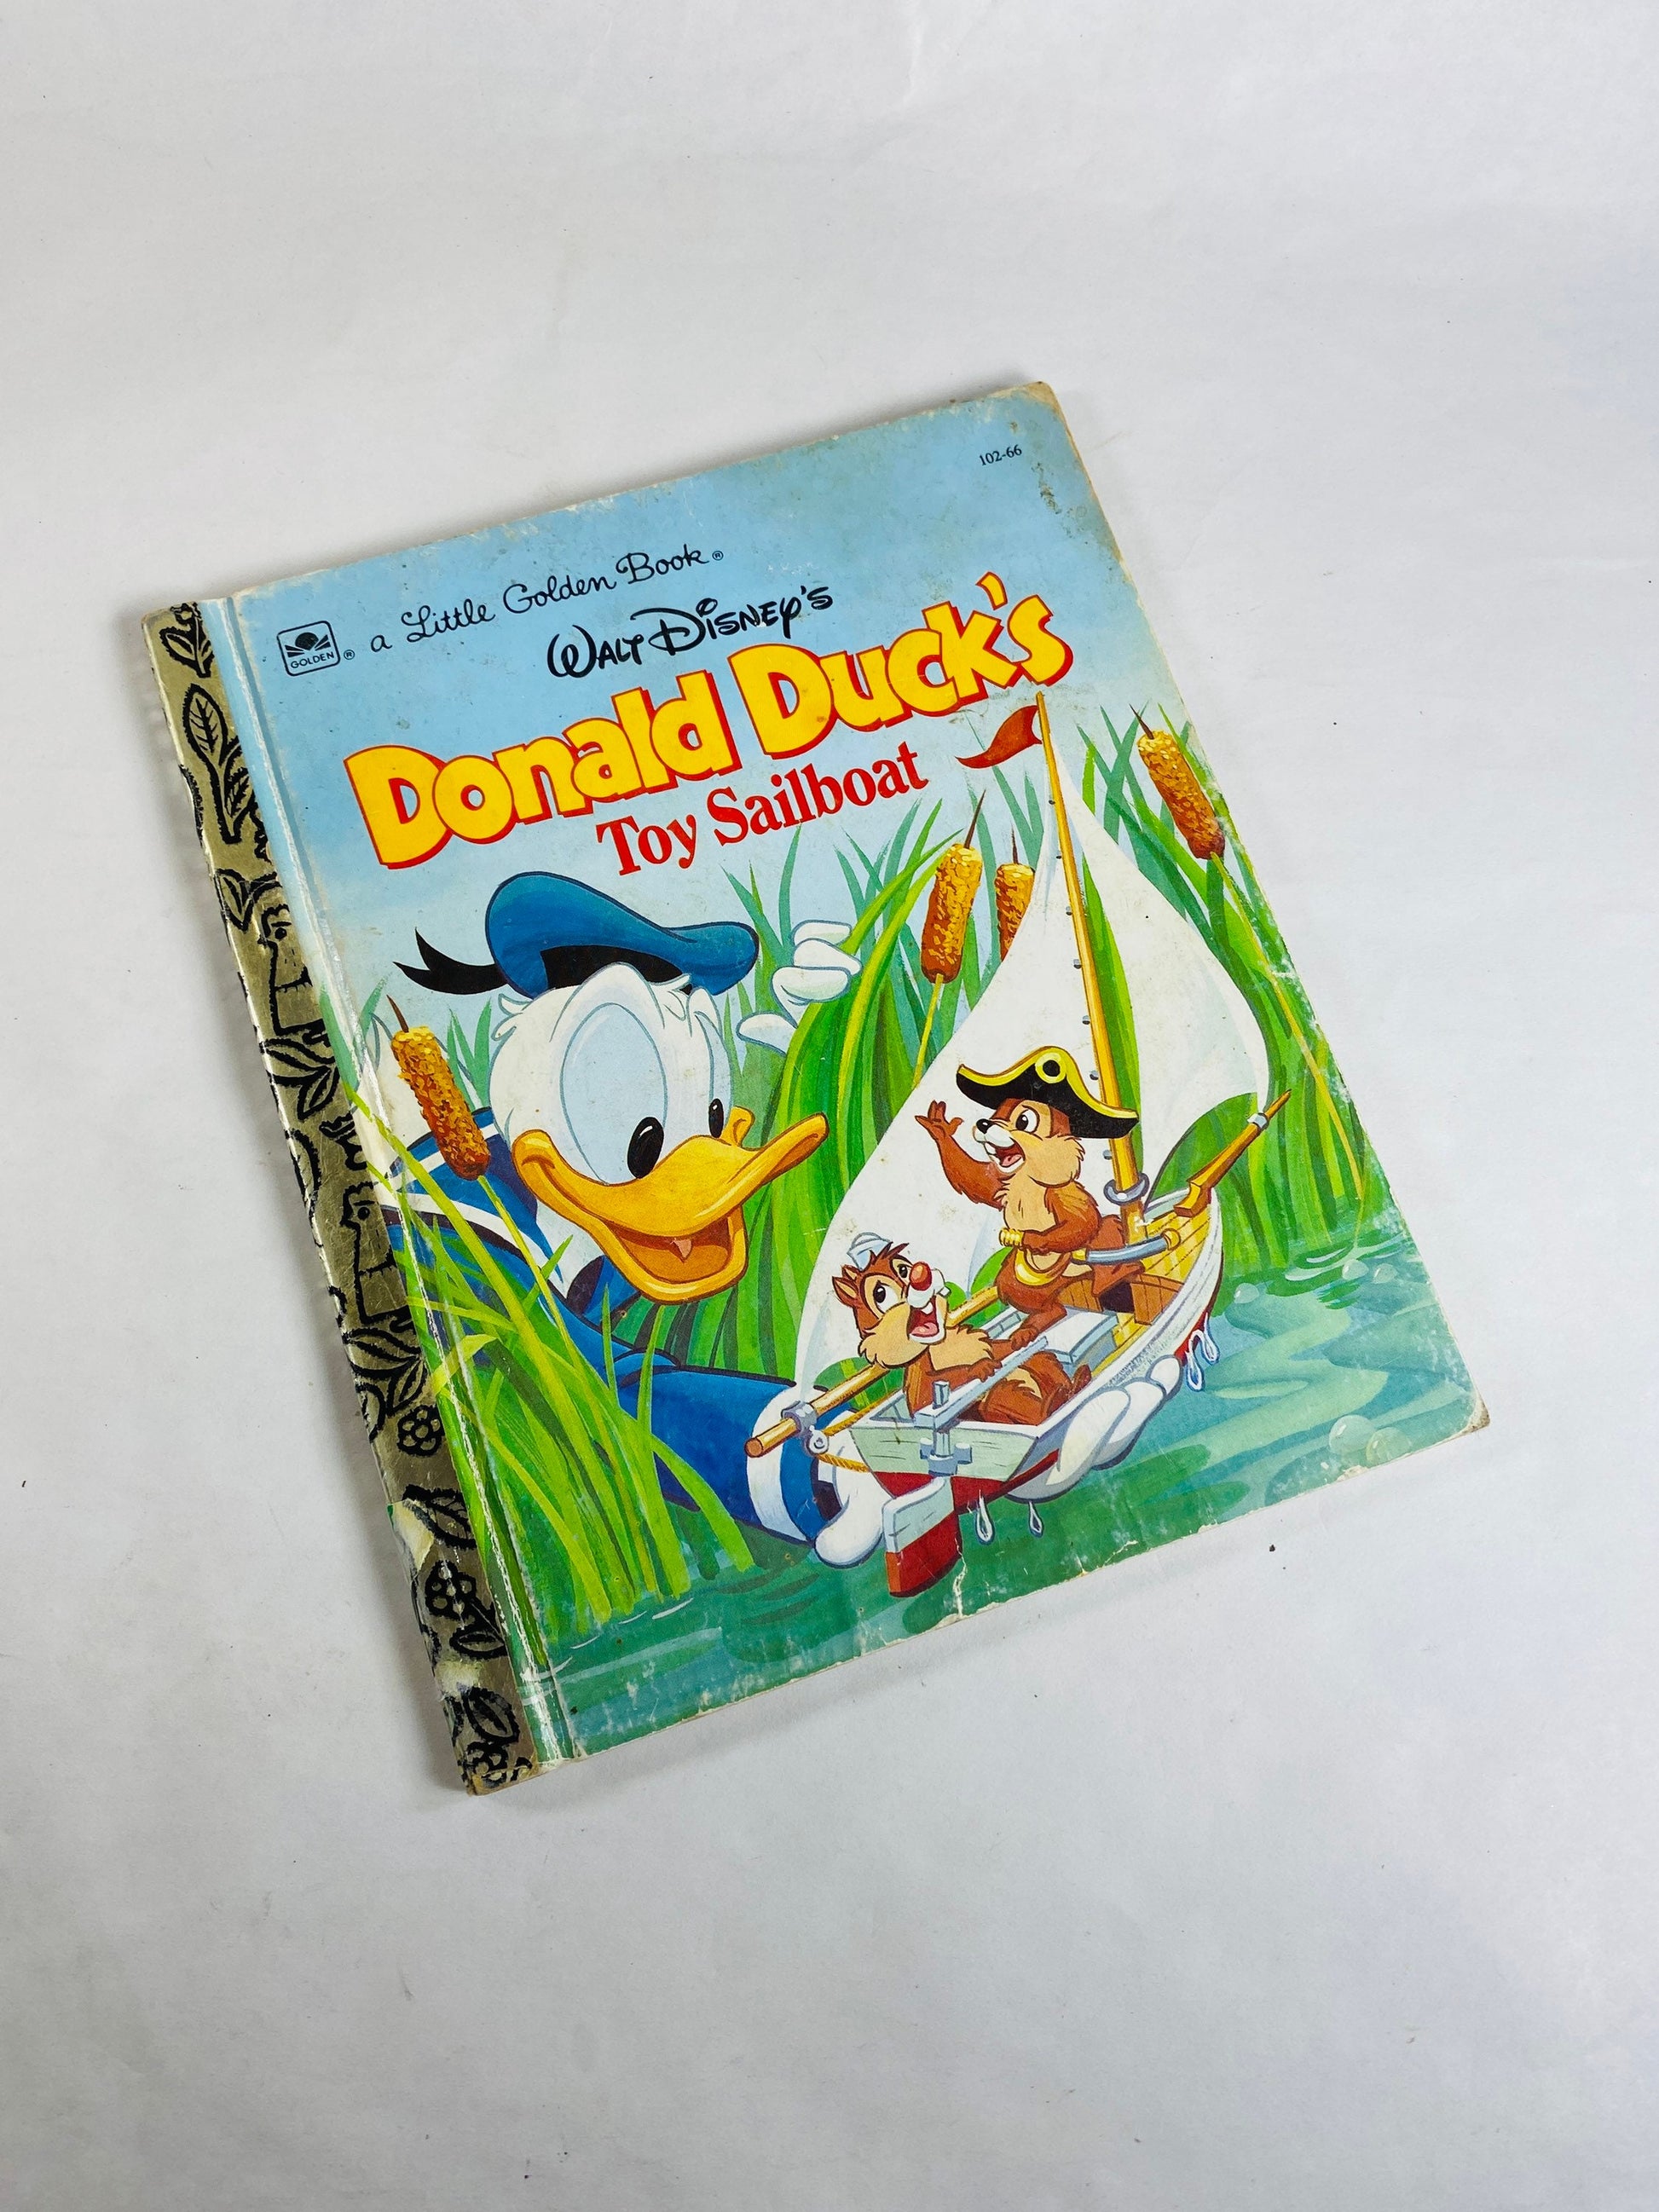 Donald Duck's Toy Sailboat vintage Little Golden Book circa 1990 Children's stories. Walt Disney lover gift Chipmunks.